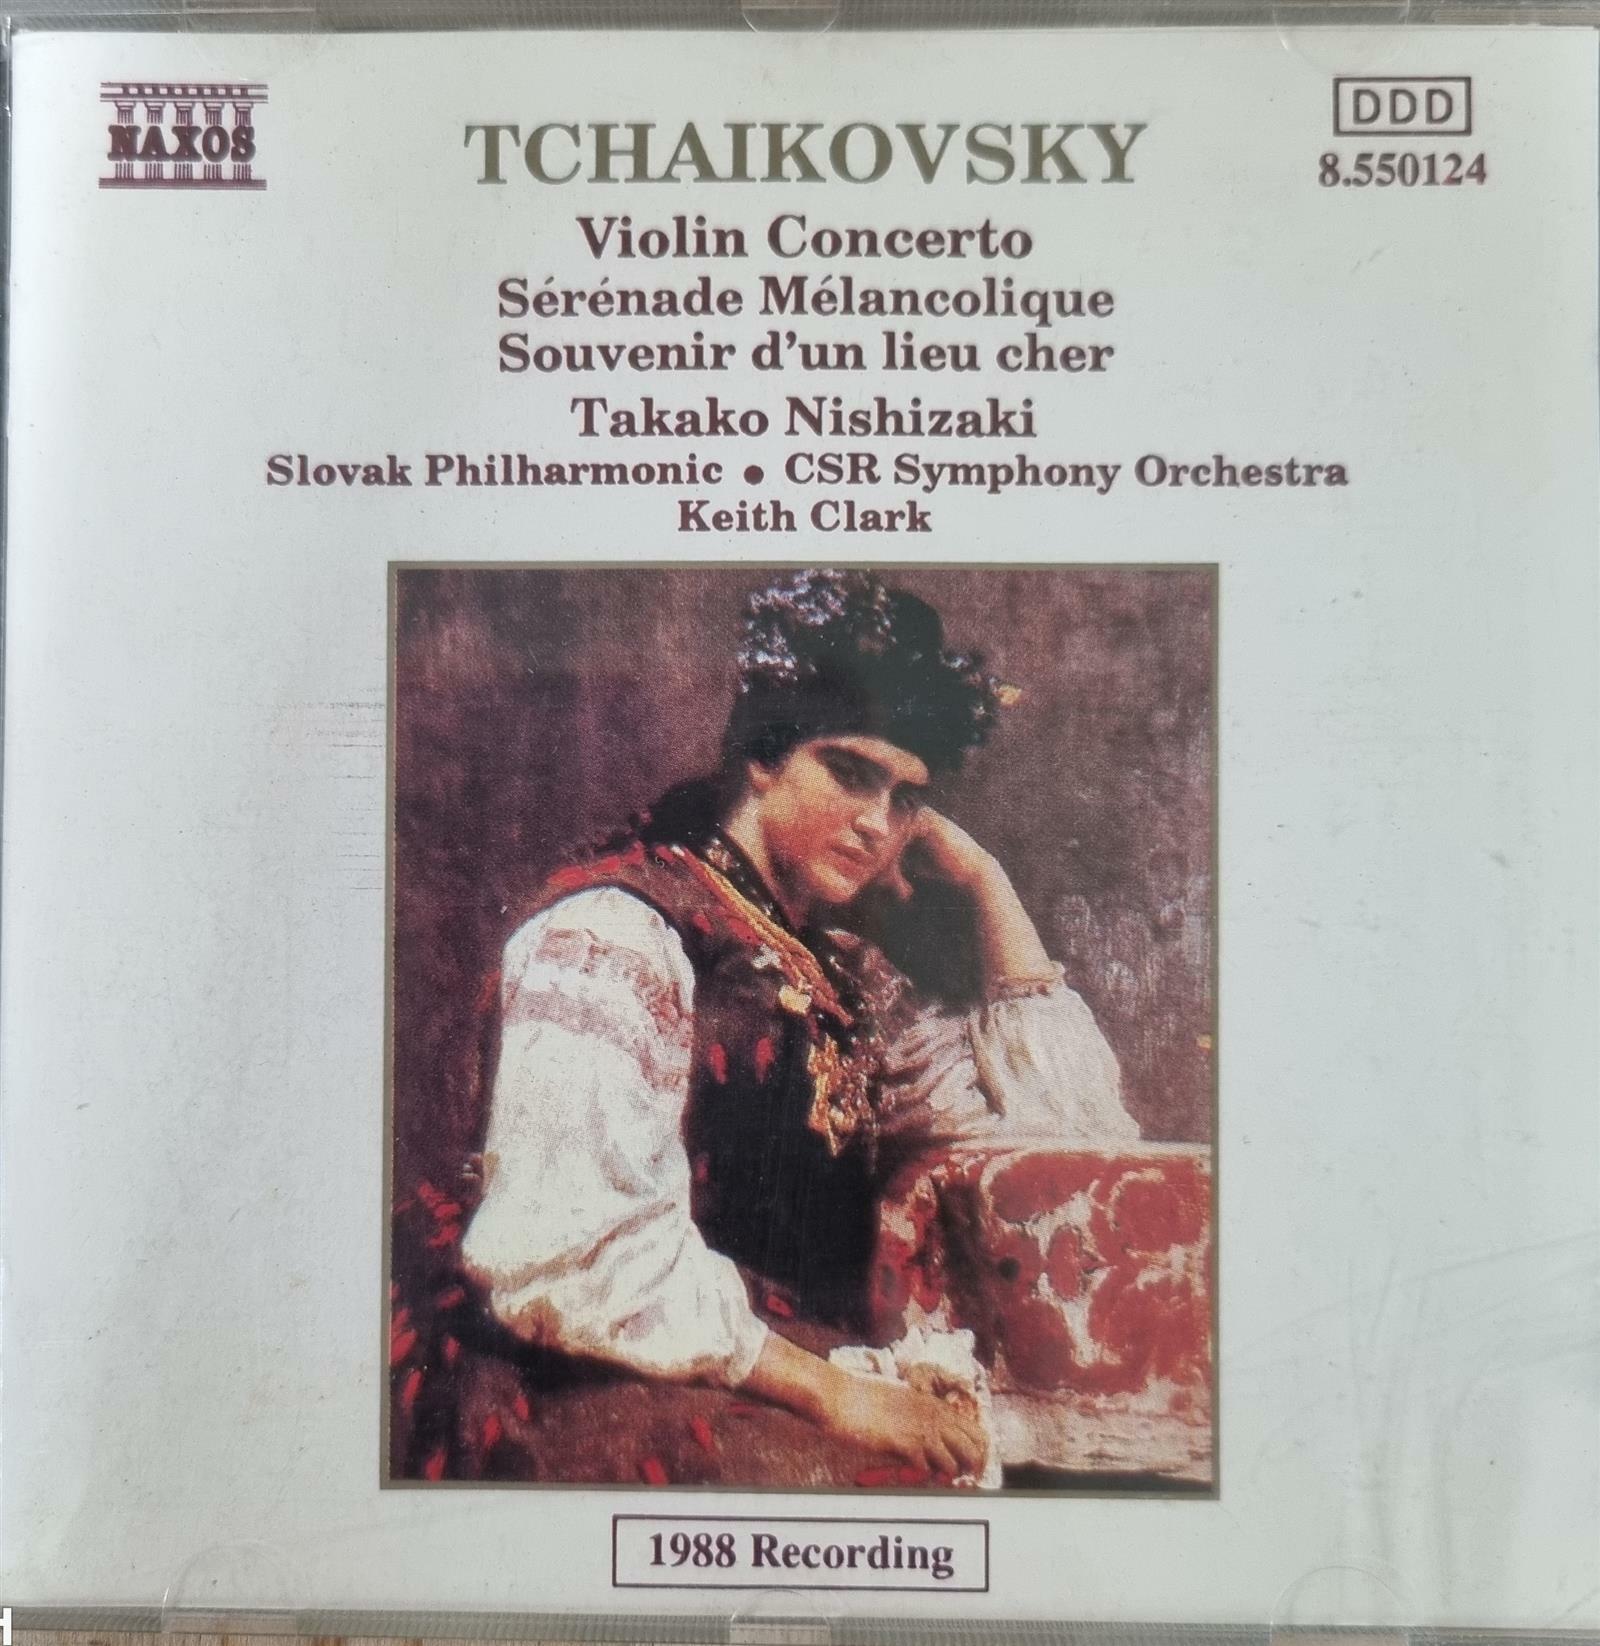 [중고] [CD 수입] Tchaikovsky - Violin Concerto, Serenade Melancolique, Souvenir d‘un lieu cher